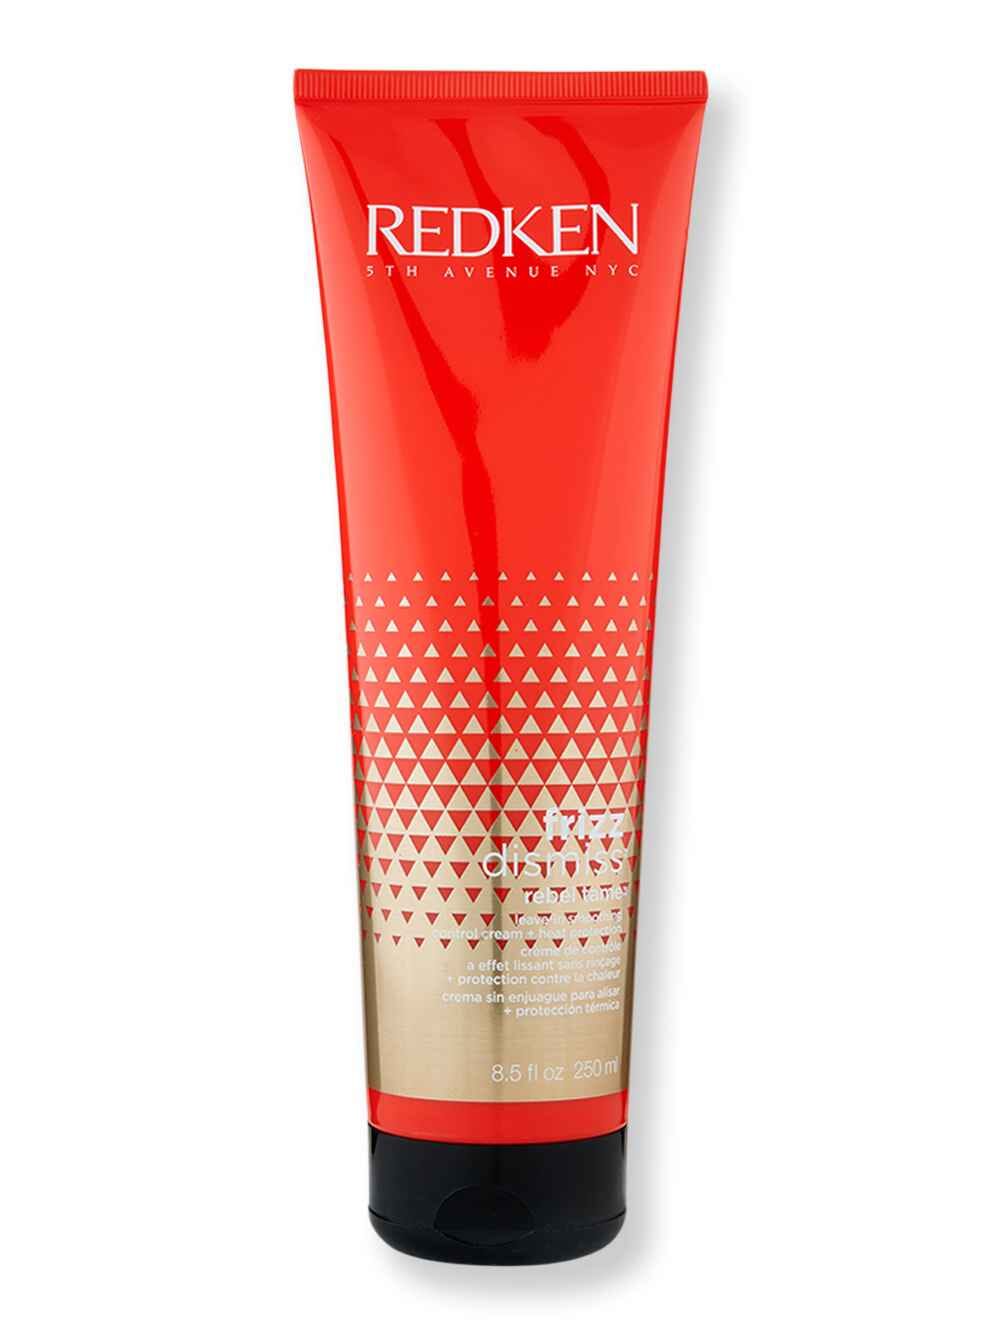 Redken Redken Frizz Dismiss Rebel Tame 8.5 oz250 ml Styling Treatments 